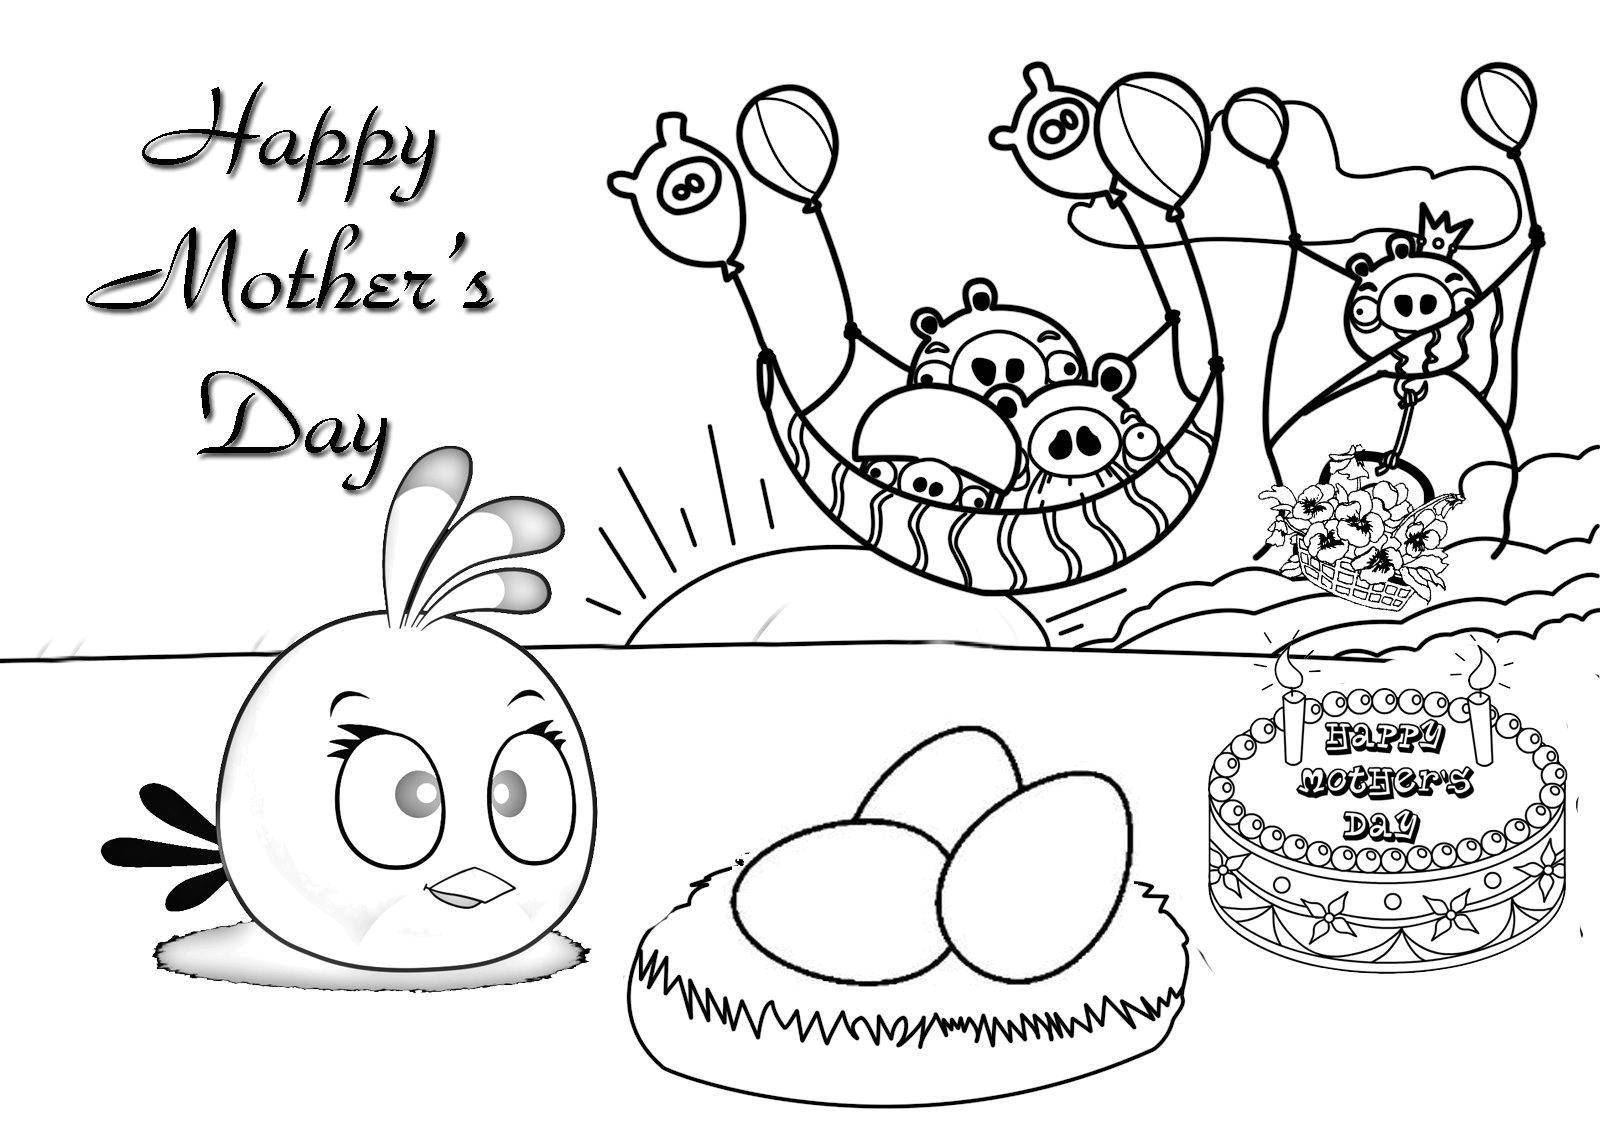 Coloring Счастливого дня матери. Category поздравление. Tags:  Поздравление, День Матери.